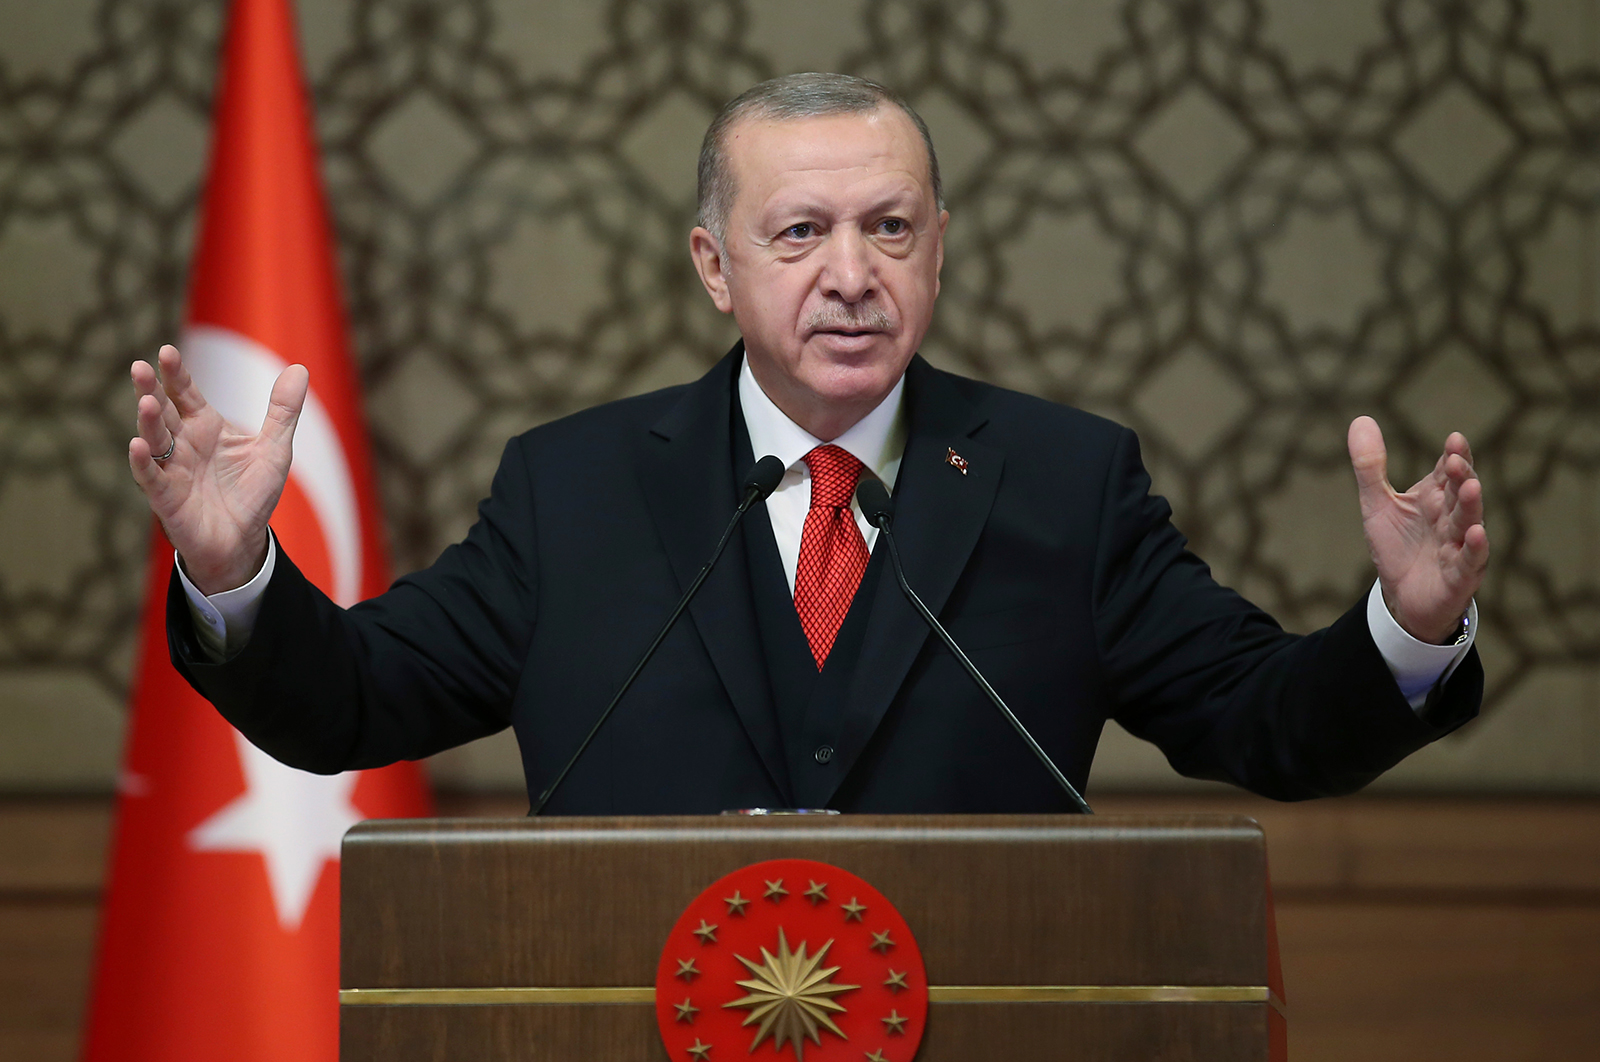 Turkish Presidency/Pool/AP